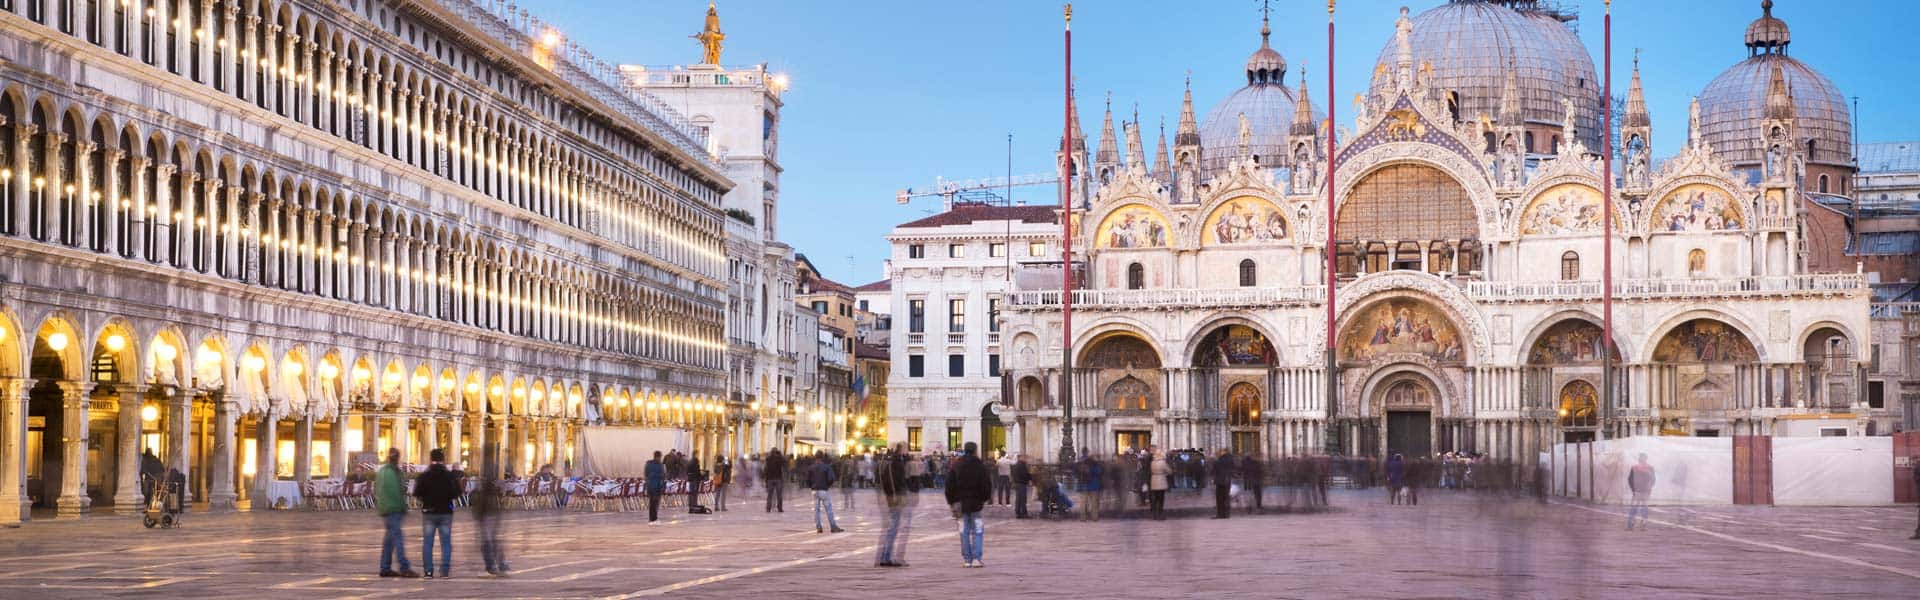 Der "schönste Festsaal Europas“, wie Napoleon einst sagte: der Markusplatz in Venedig